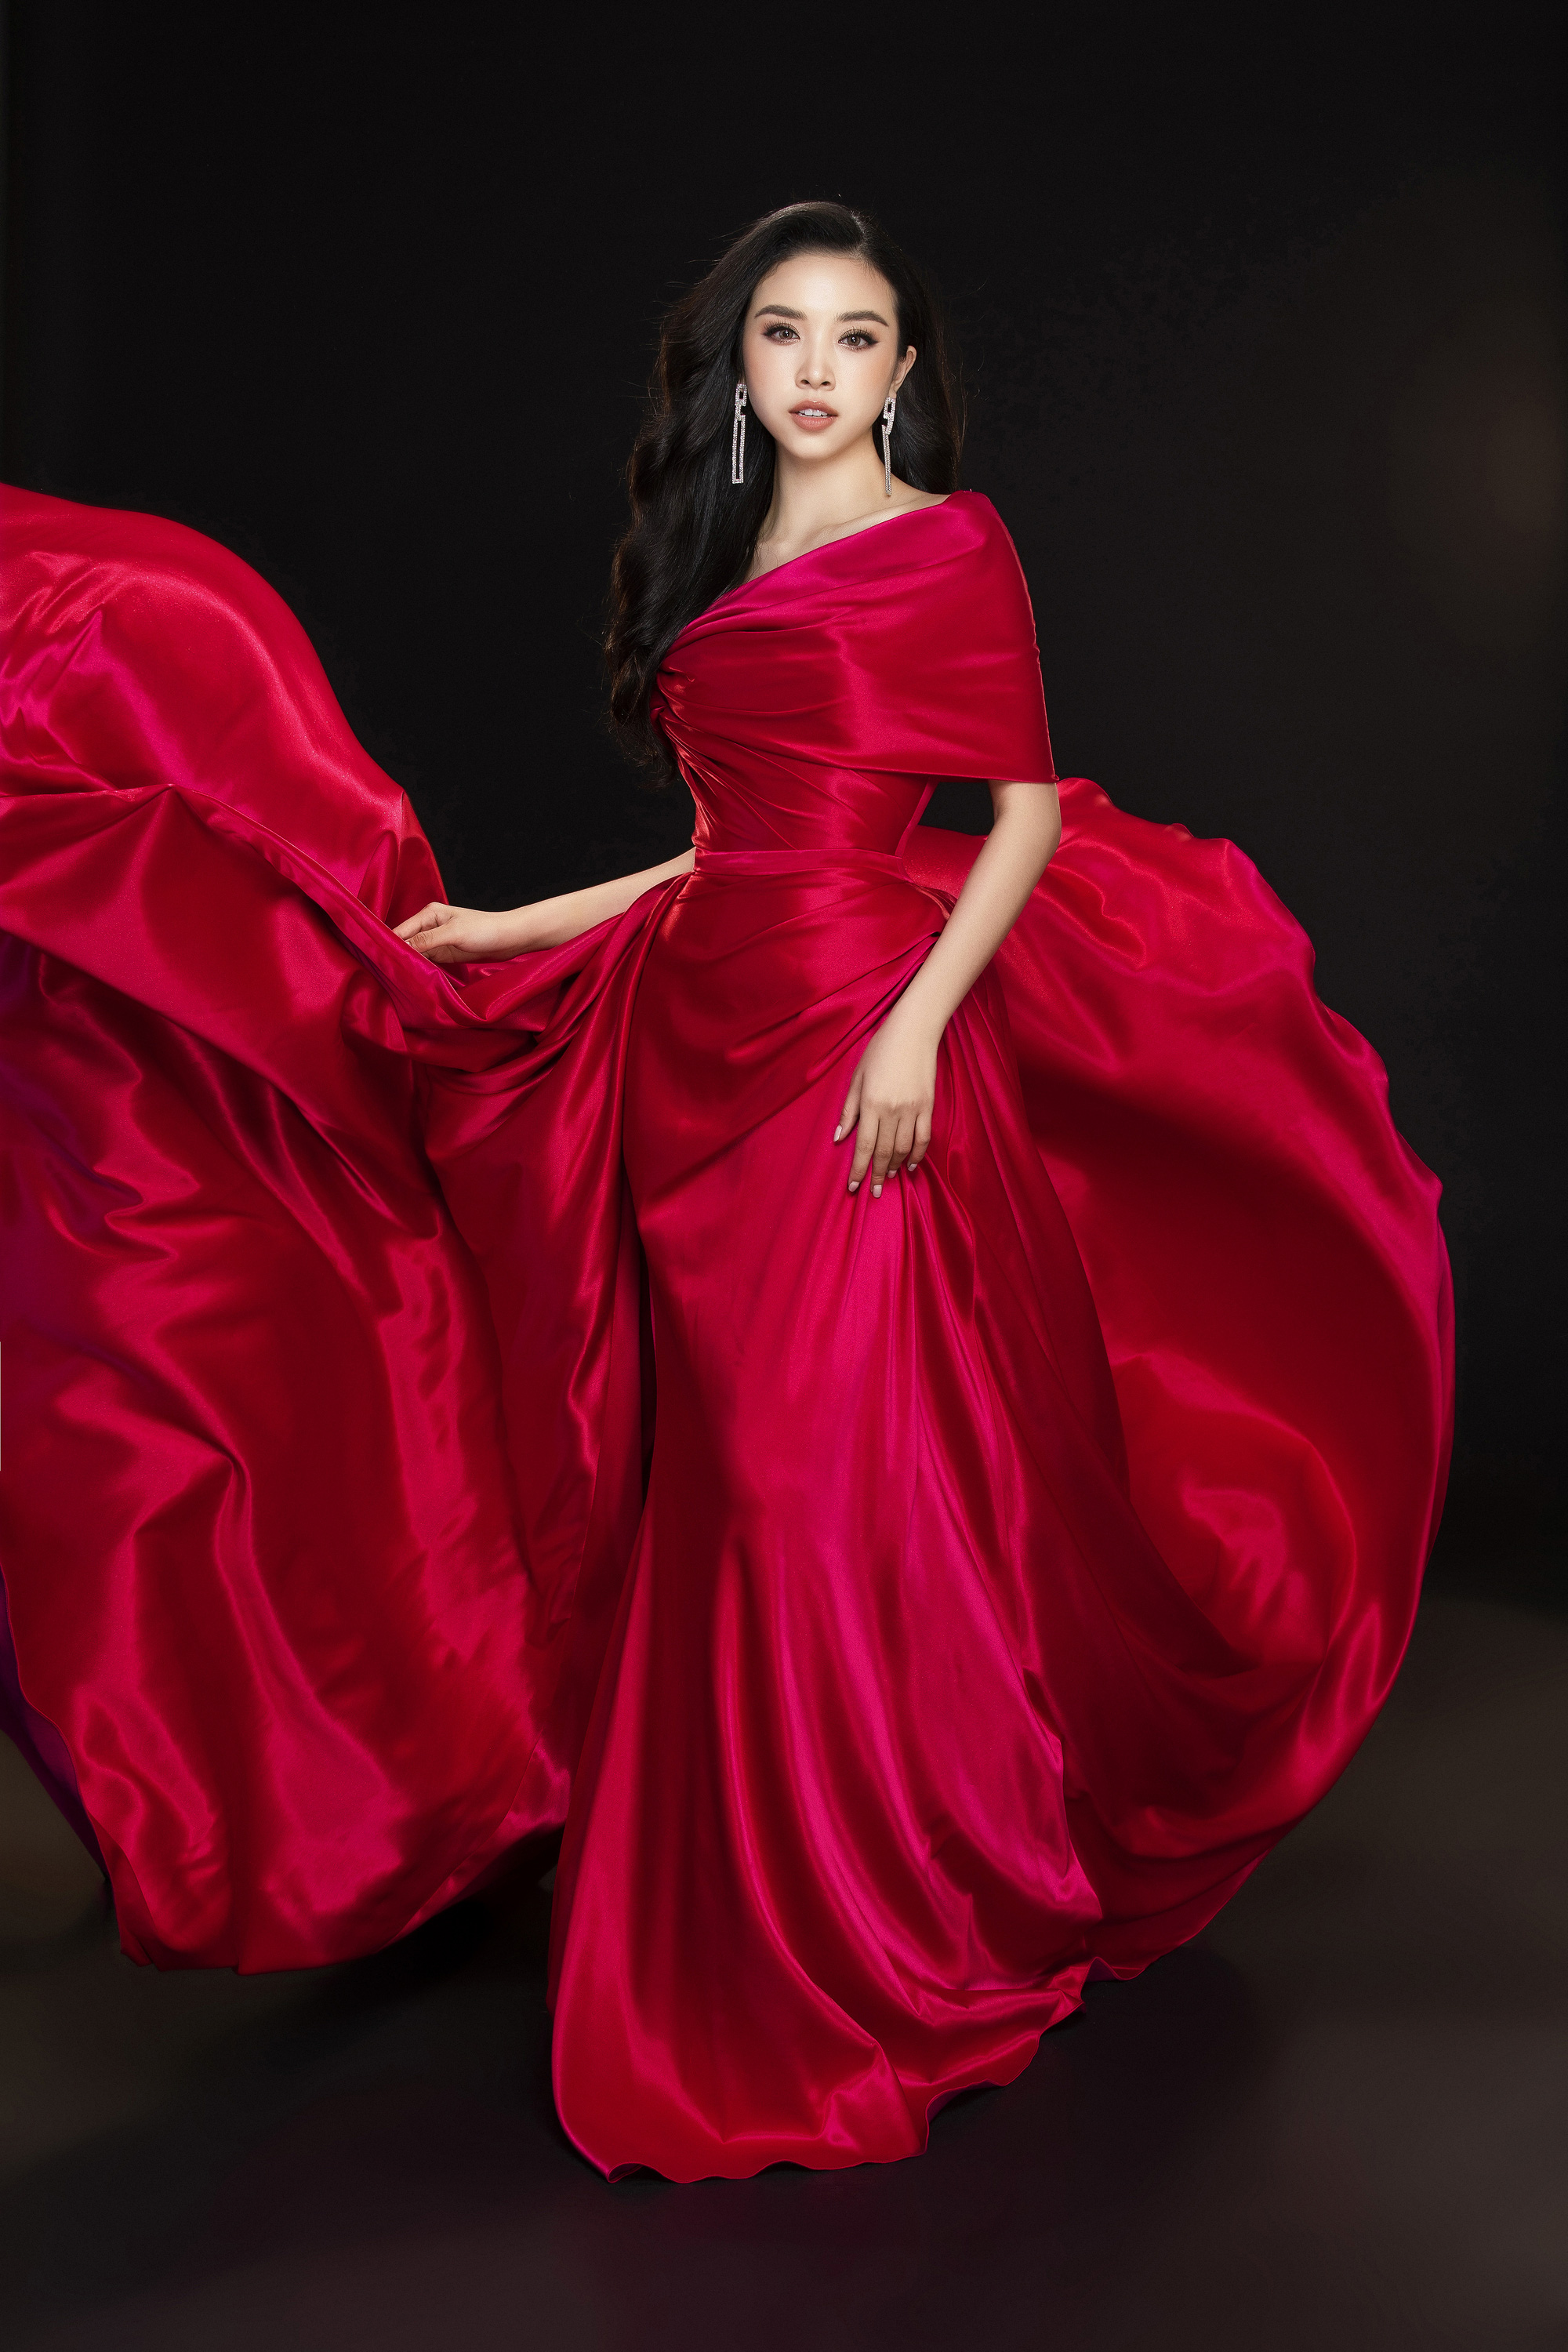 Hoa hậu Việt Nam 2020 chính thức khởi động, đi tìm chủ nhận mới của chiếc vương miện kế nhiệm Trần Tiểu Vy - Ảnh 6.